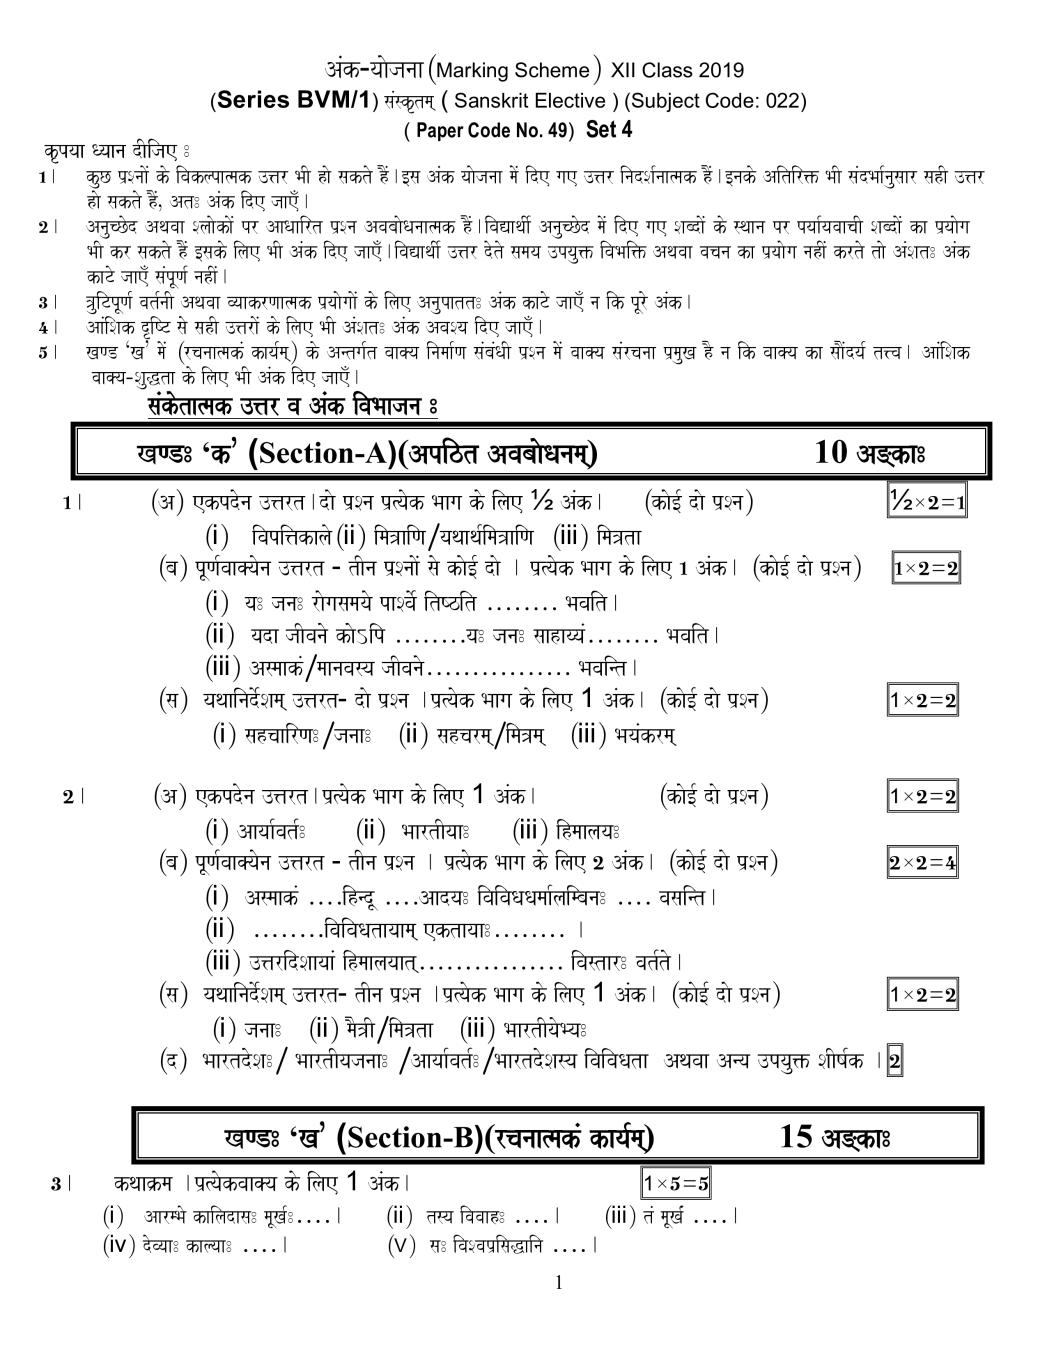 CBSE Class 12 Sanskrit Elective Question Paper 2019 set 2 Solutions - Page 1